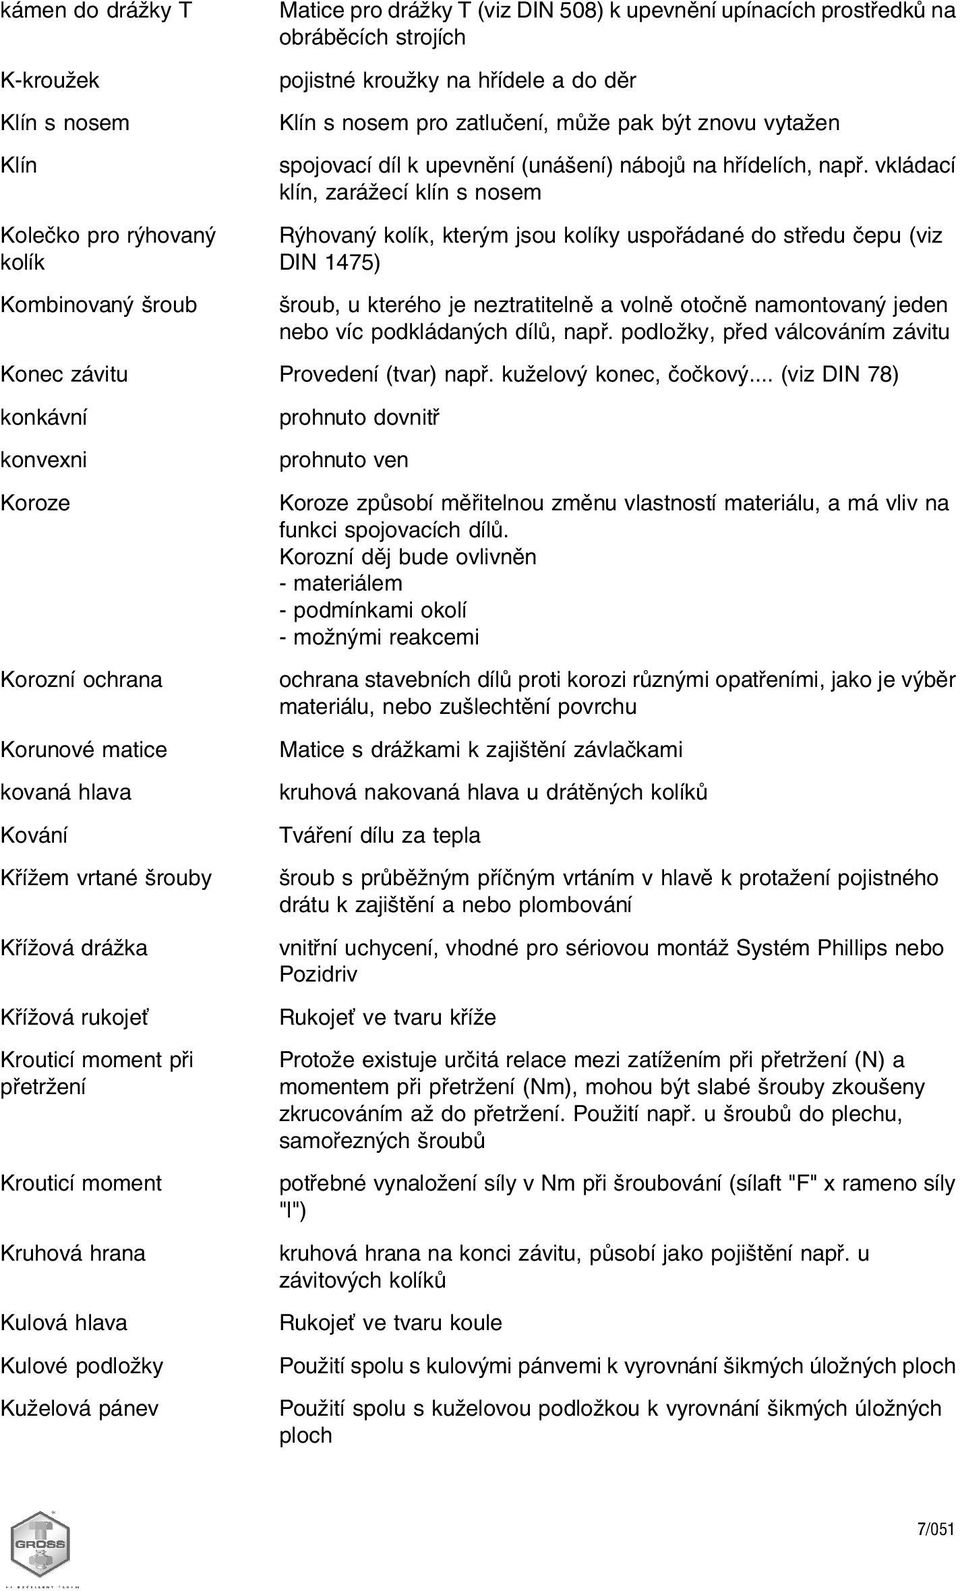 Seznam odborných výrazů - PDF Stažení zdarma